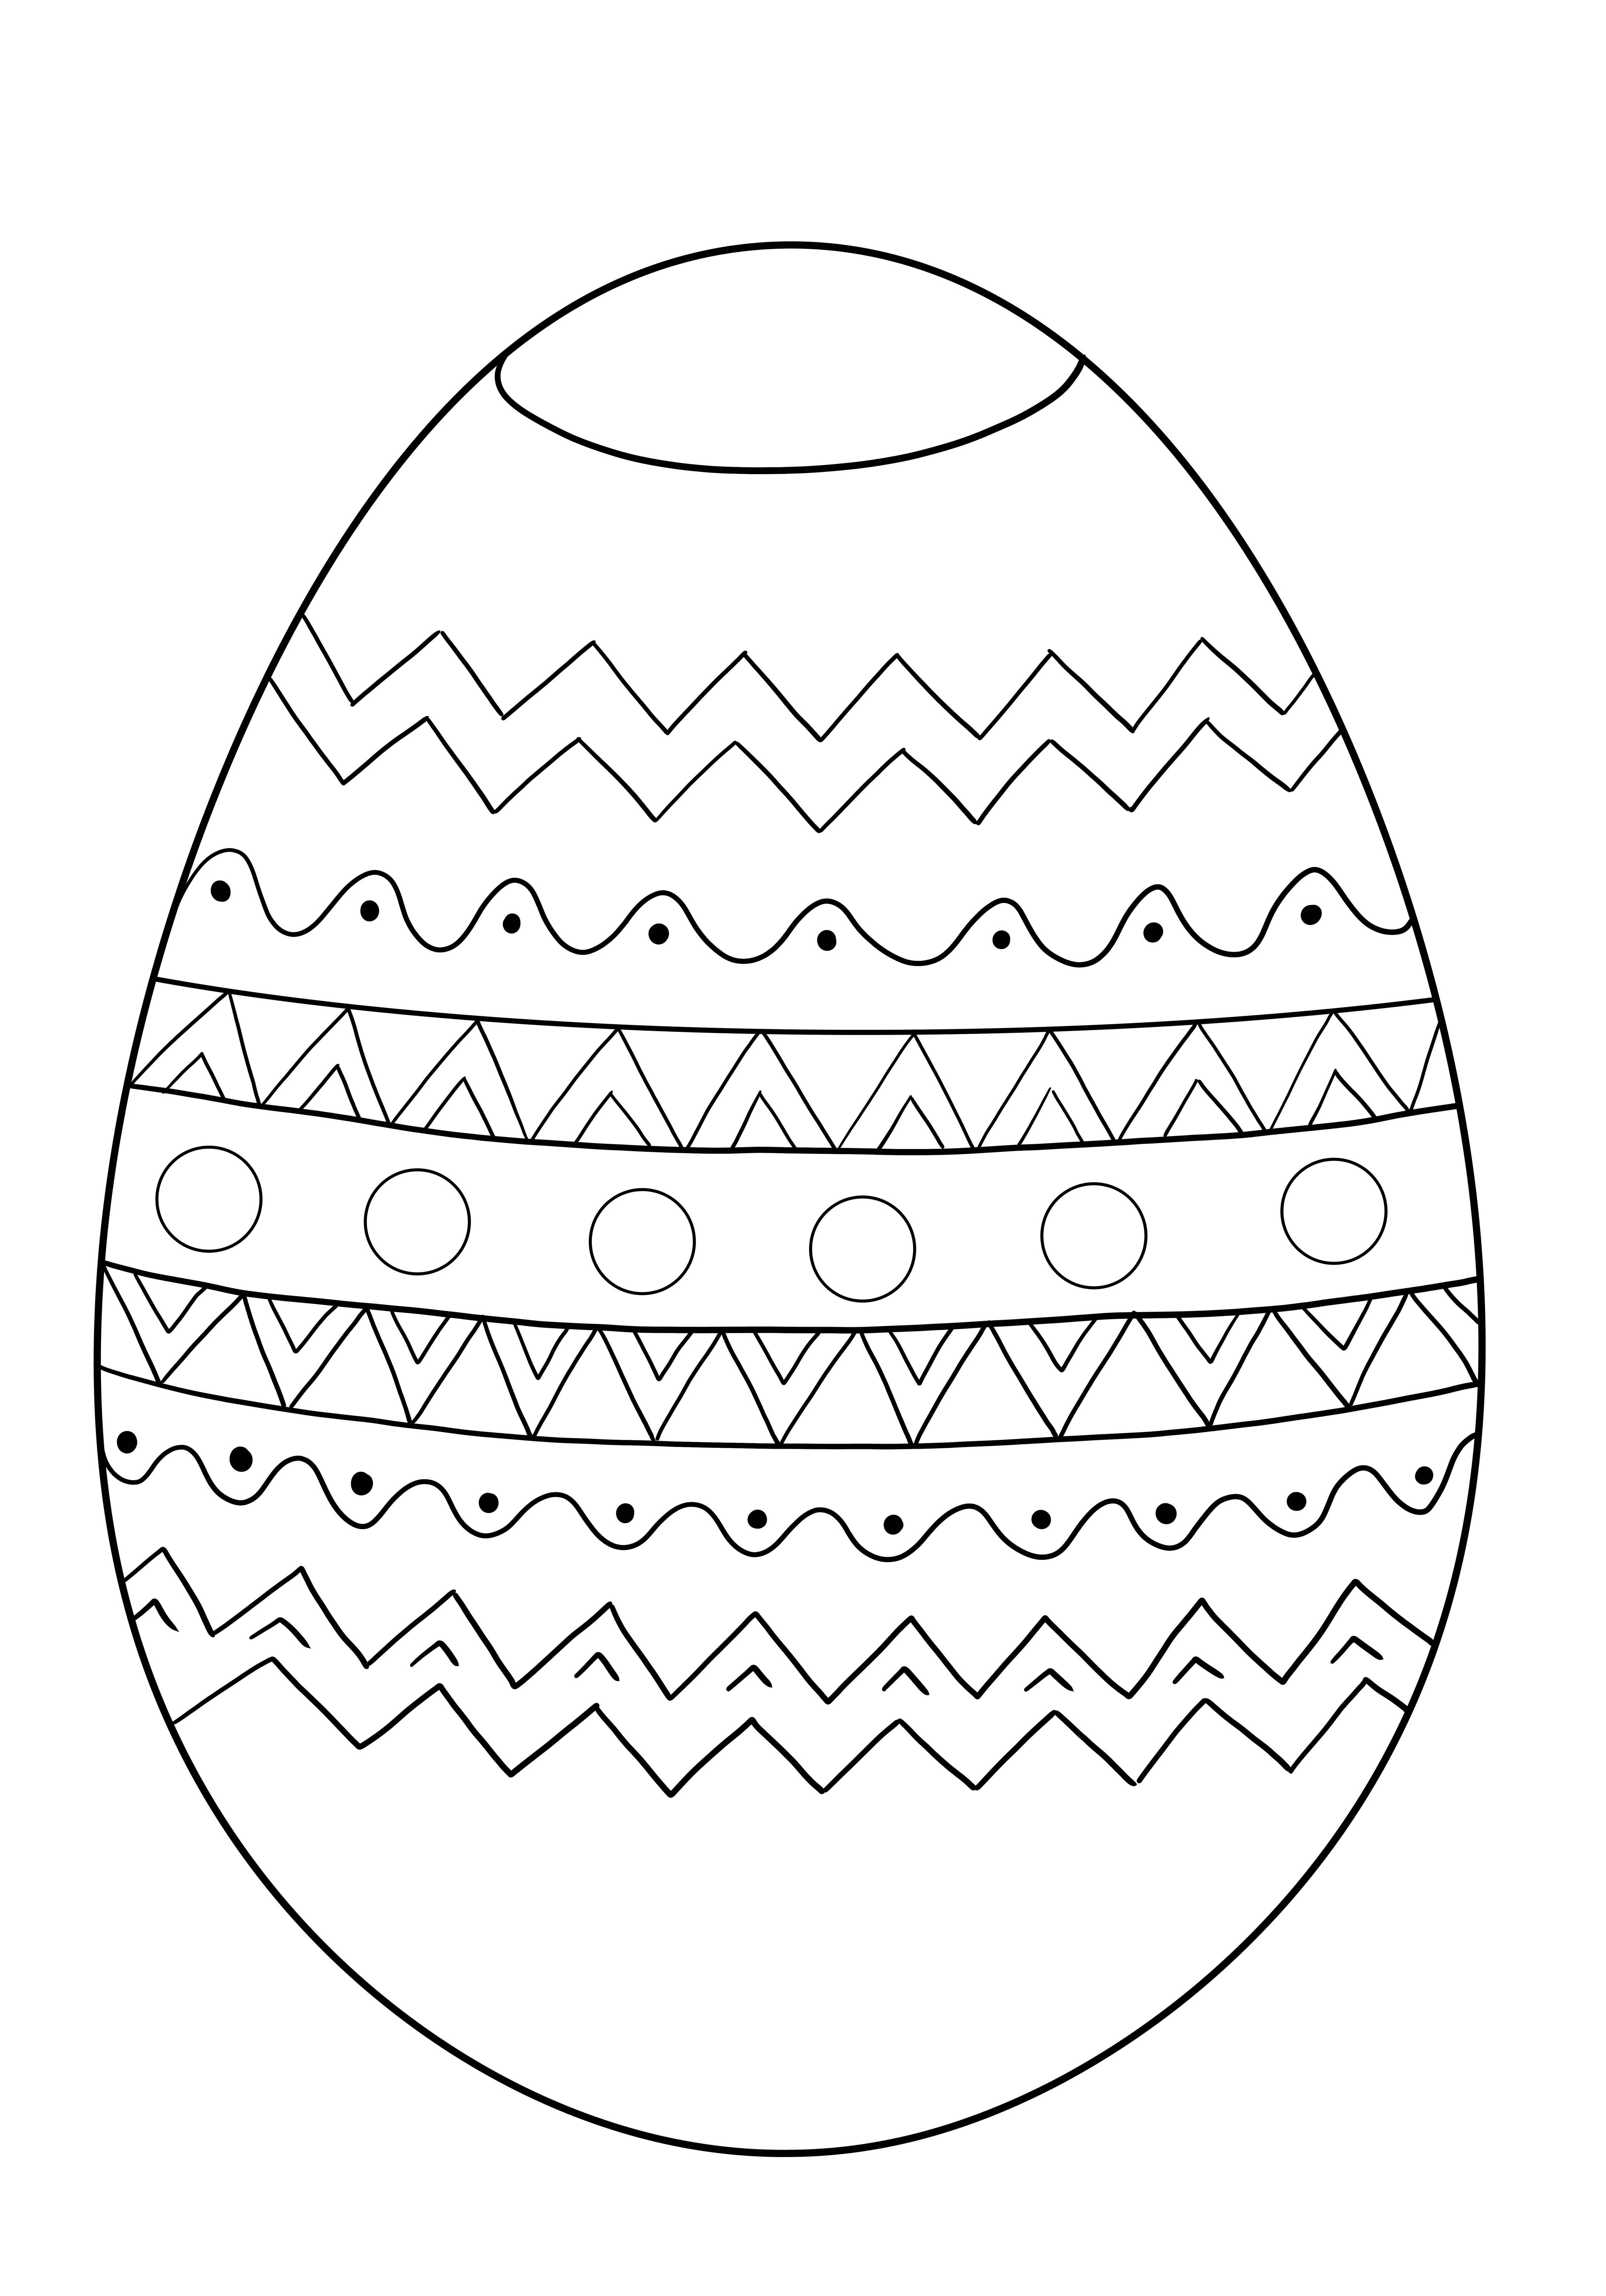 Huevo de pascua ornamental para imprimir y colorear gratis